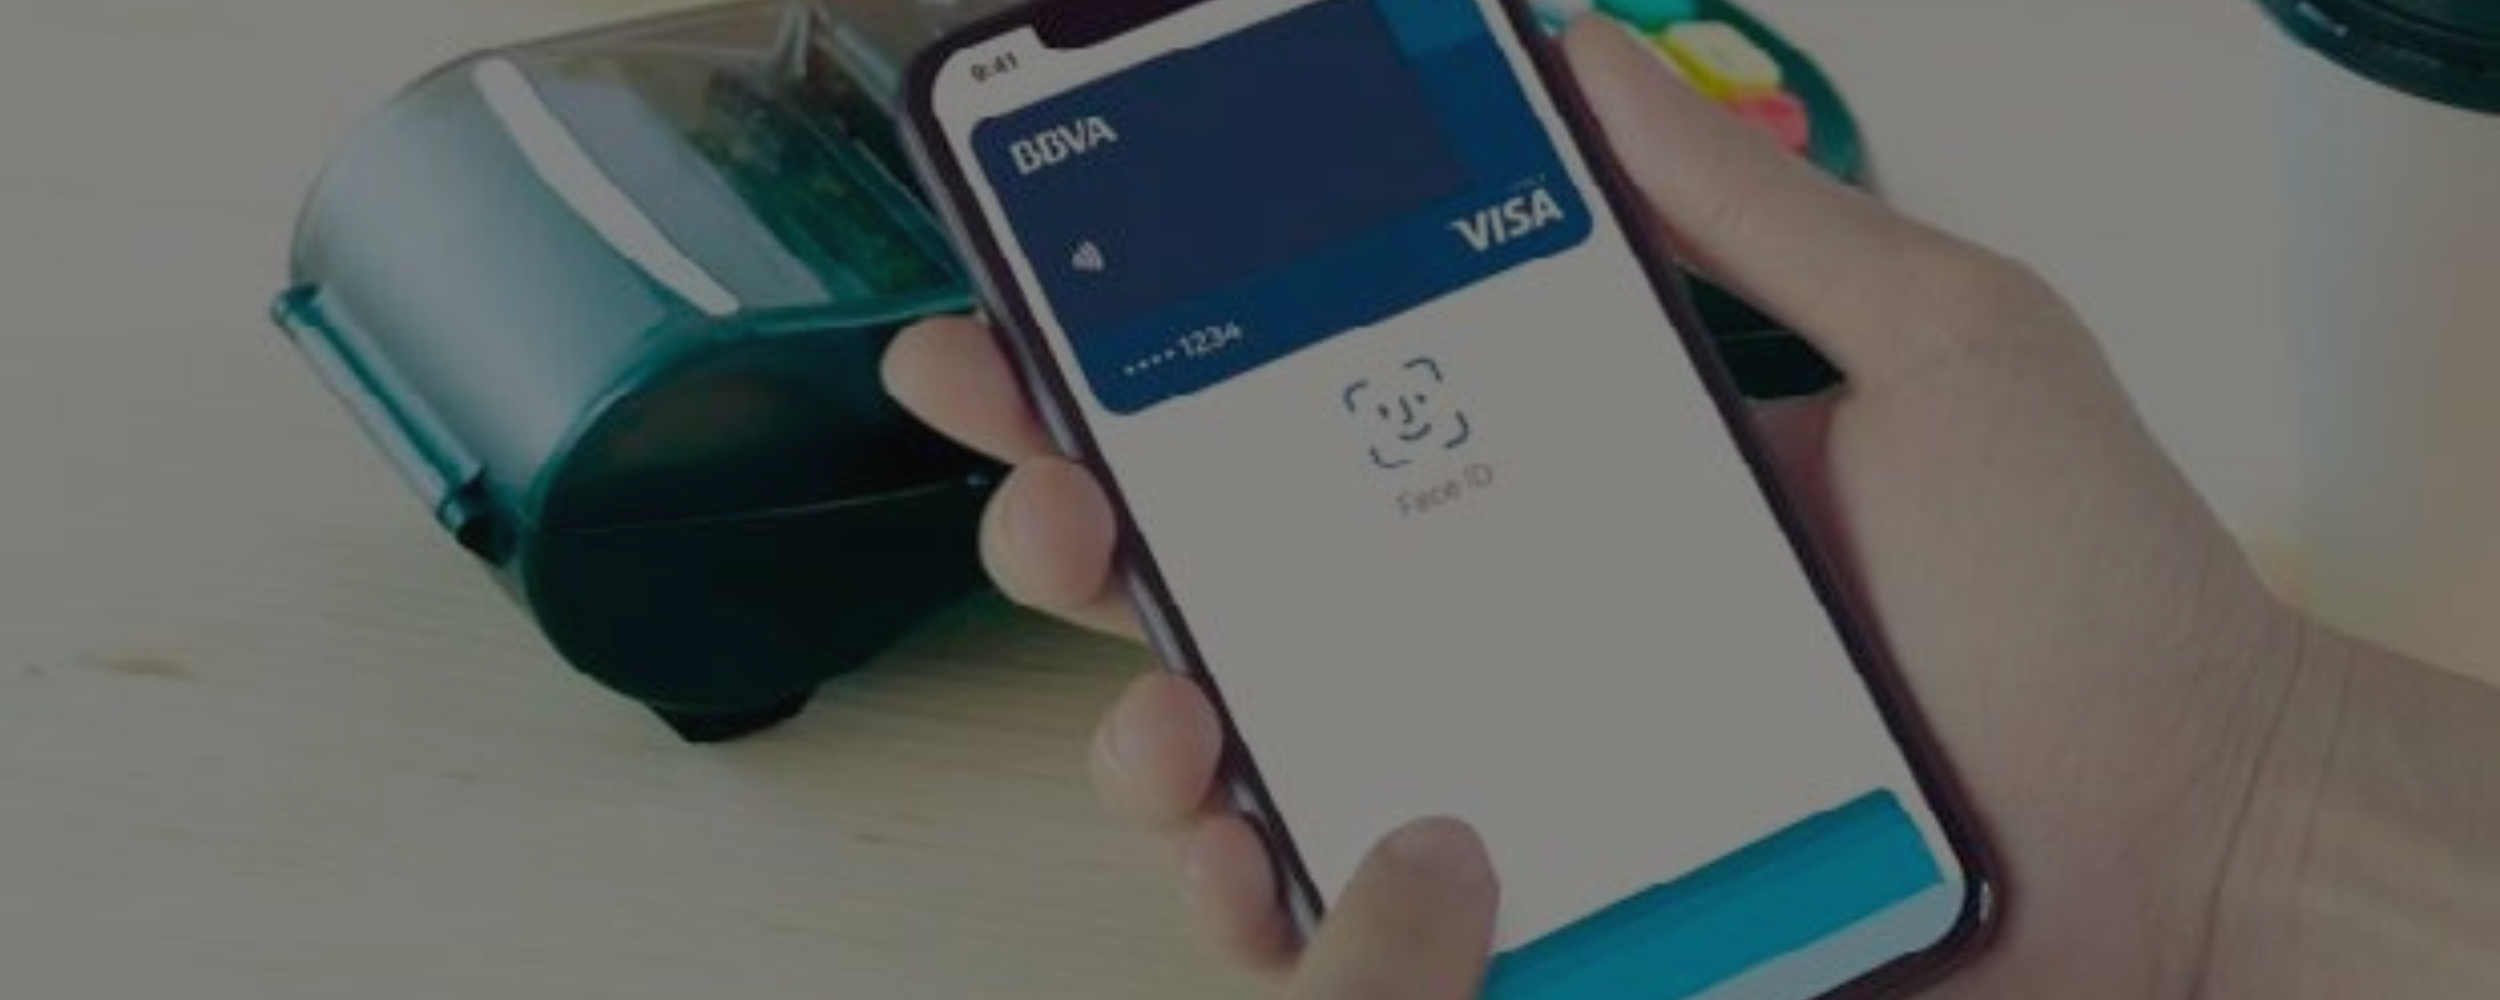 Sistema de pago desde el móvil o NFC